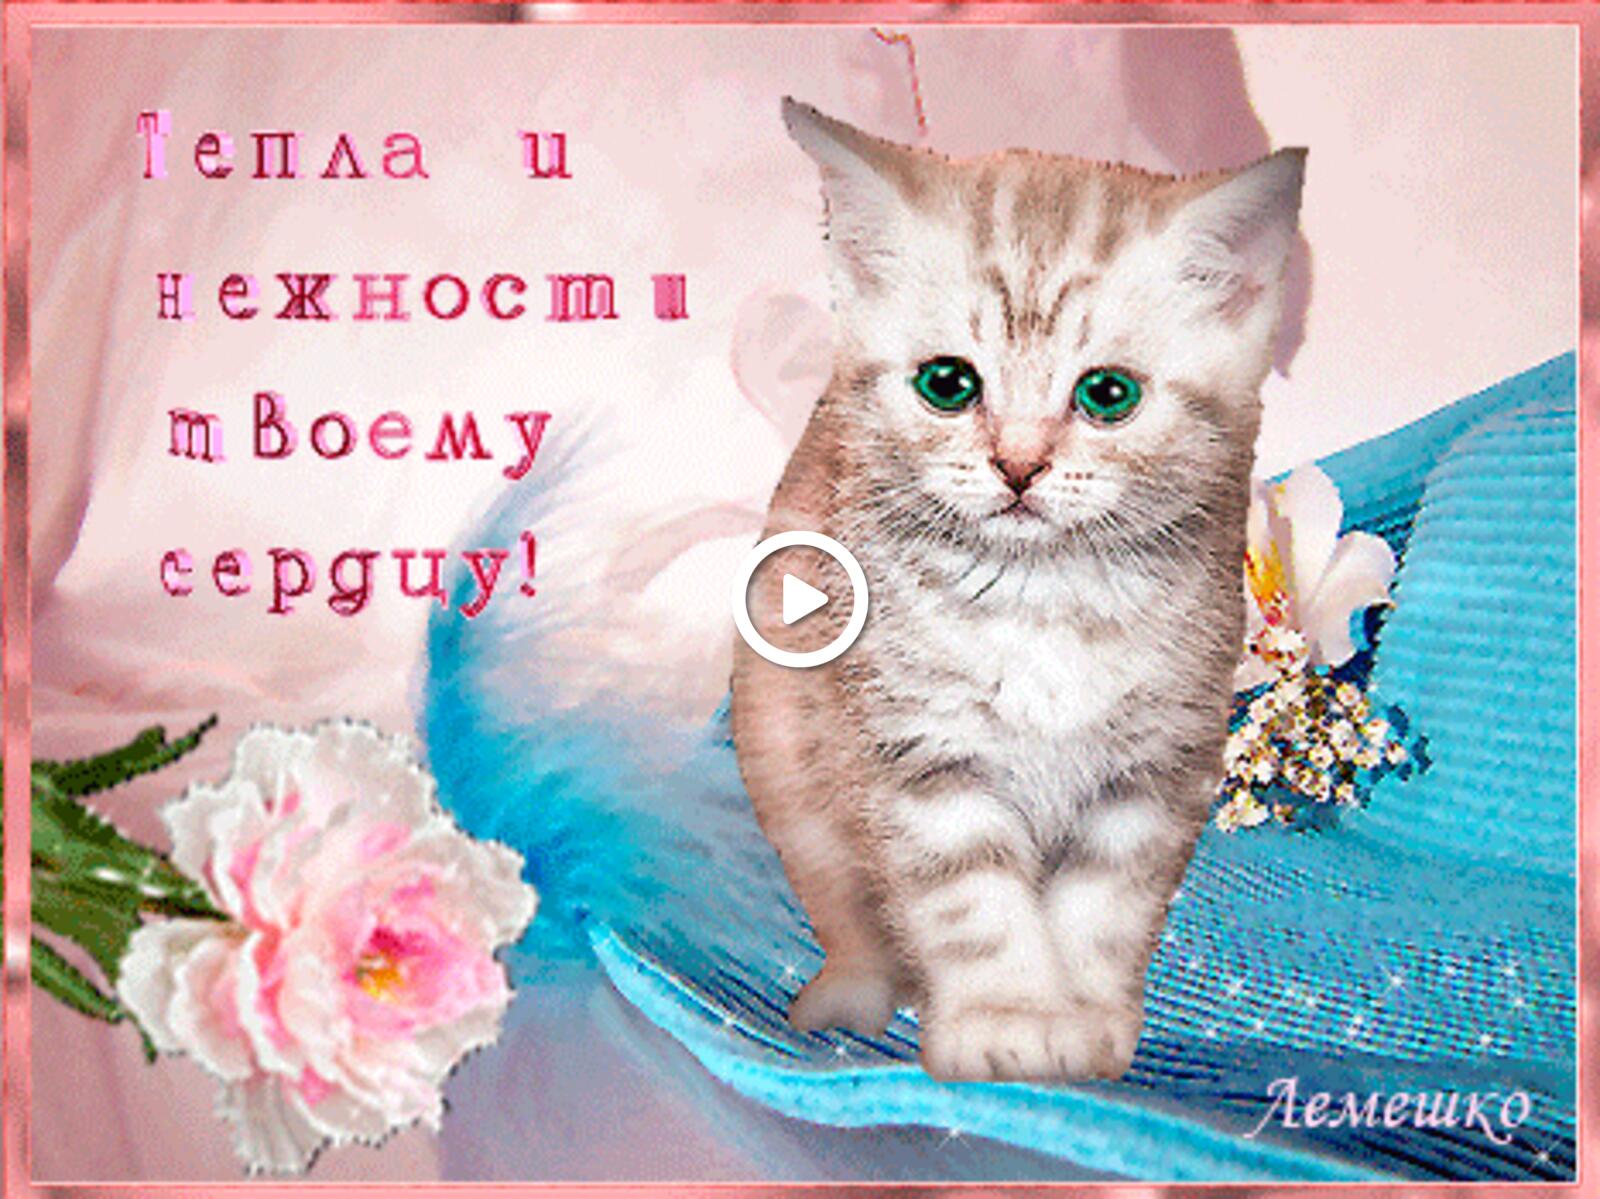 一张以好日子卡 鲜花 小猫为主题的明信片